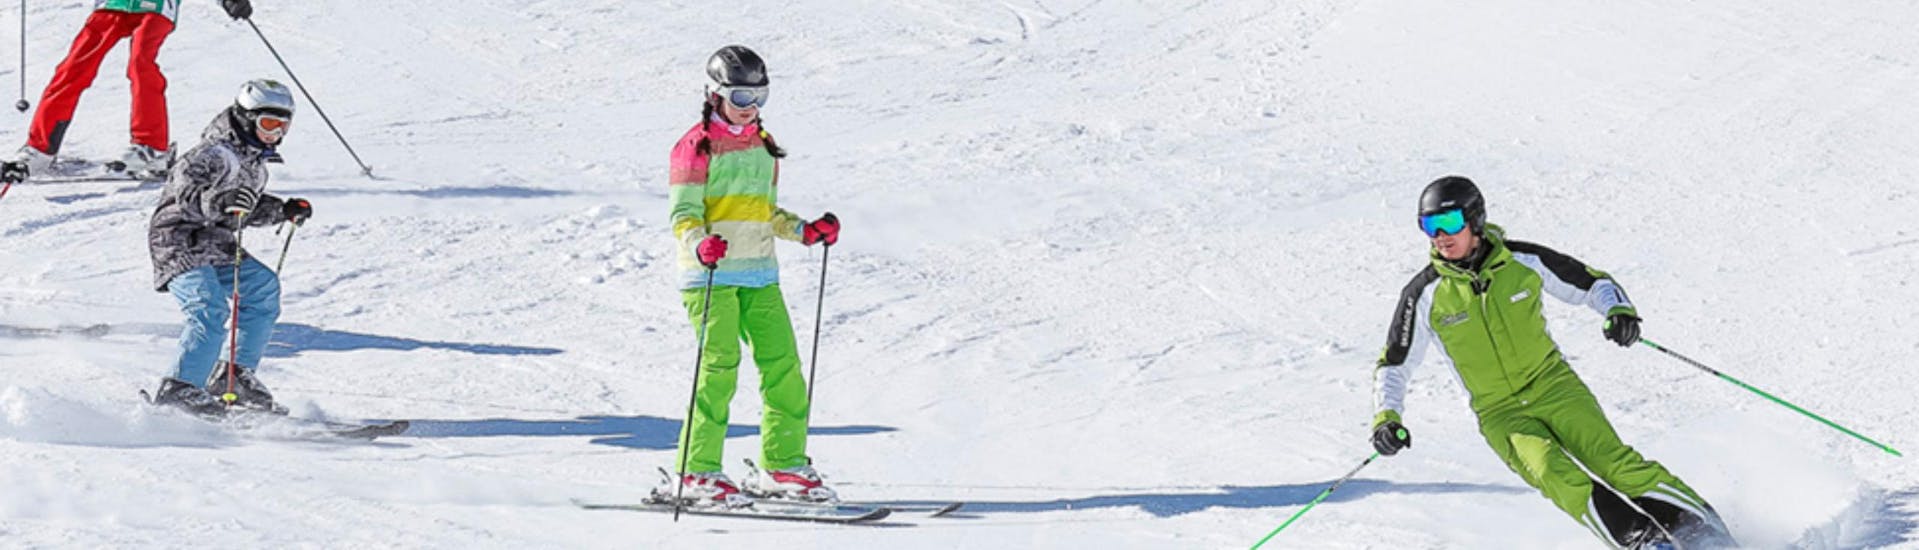 Cours de ski Enfants dès 3 ans pour Tous niveaux.